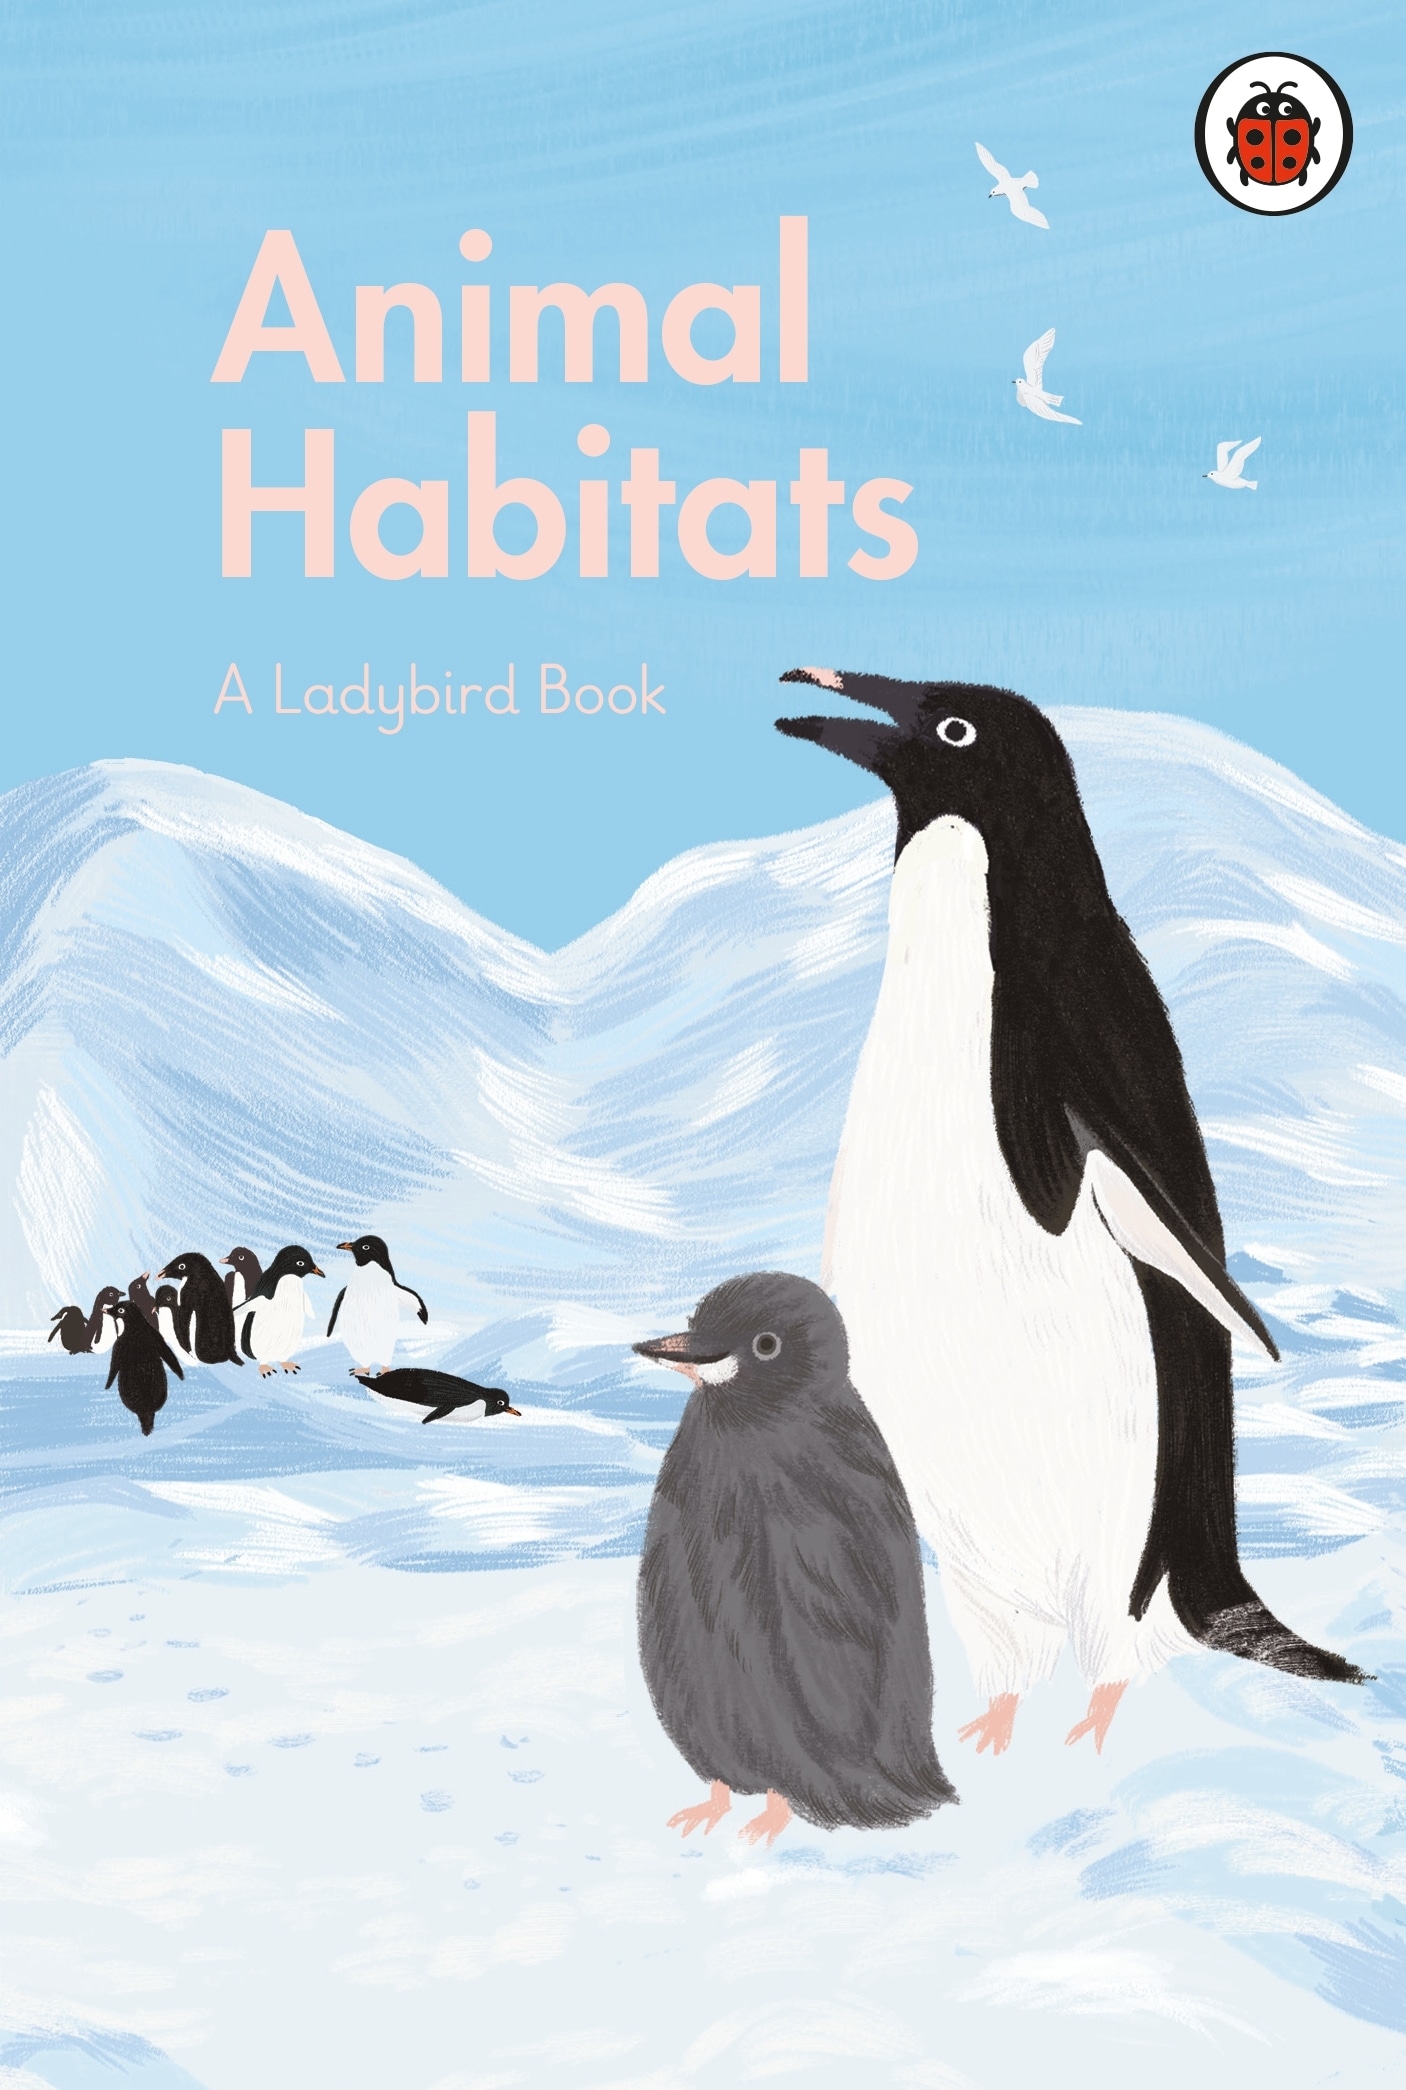 Book “A Ladybird Book: Animal Habitats” by Ayang Cempaka — May 6, 2021